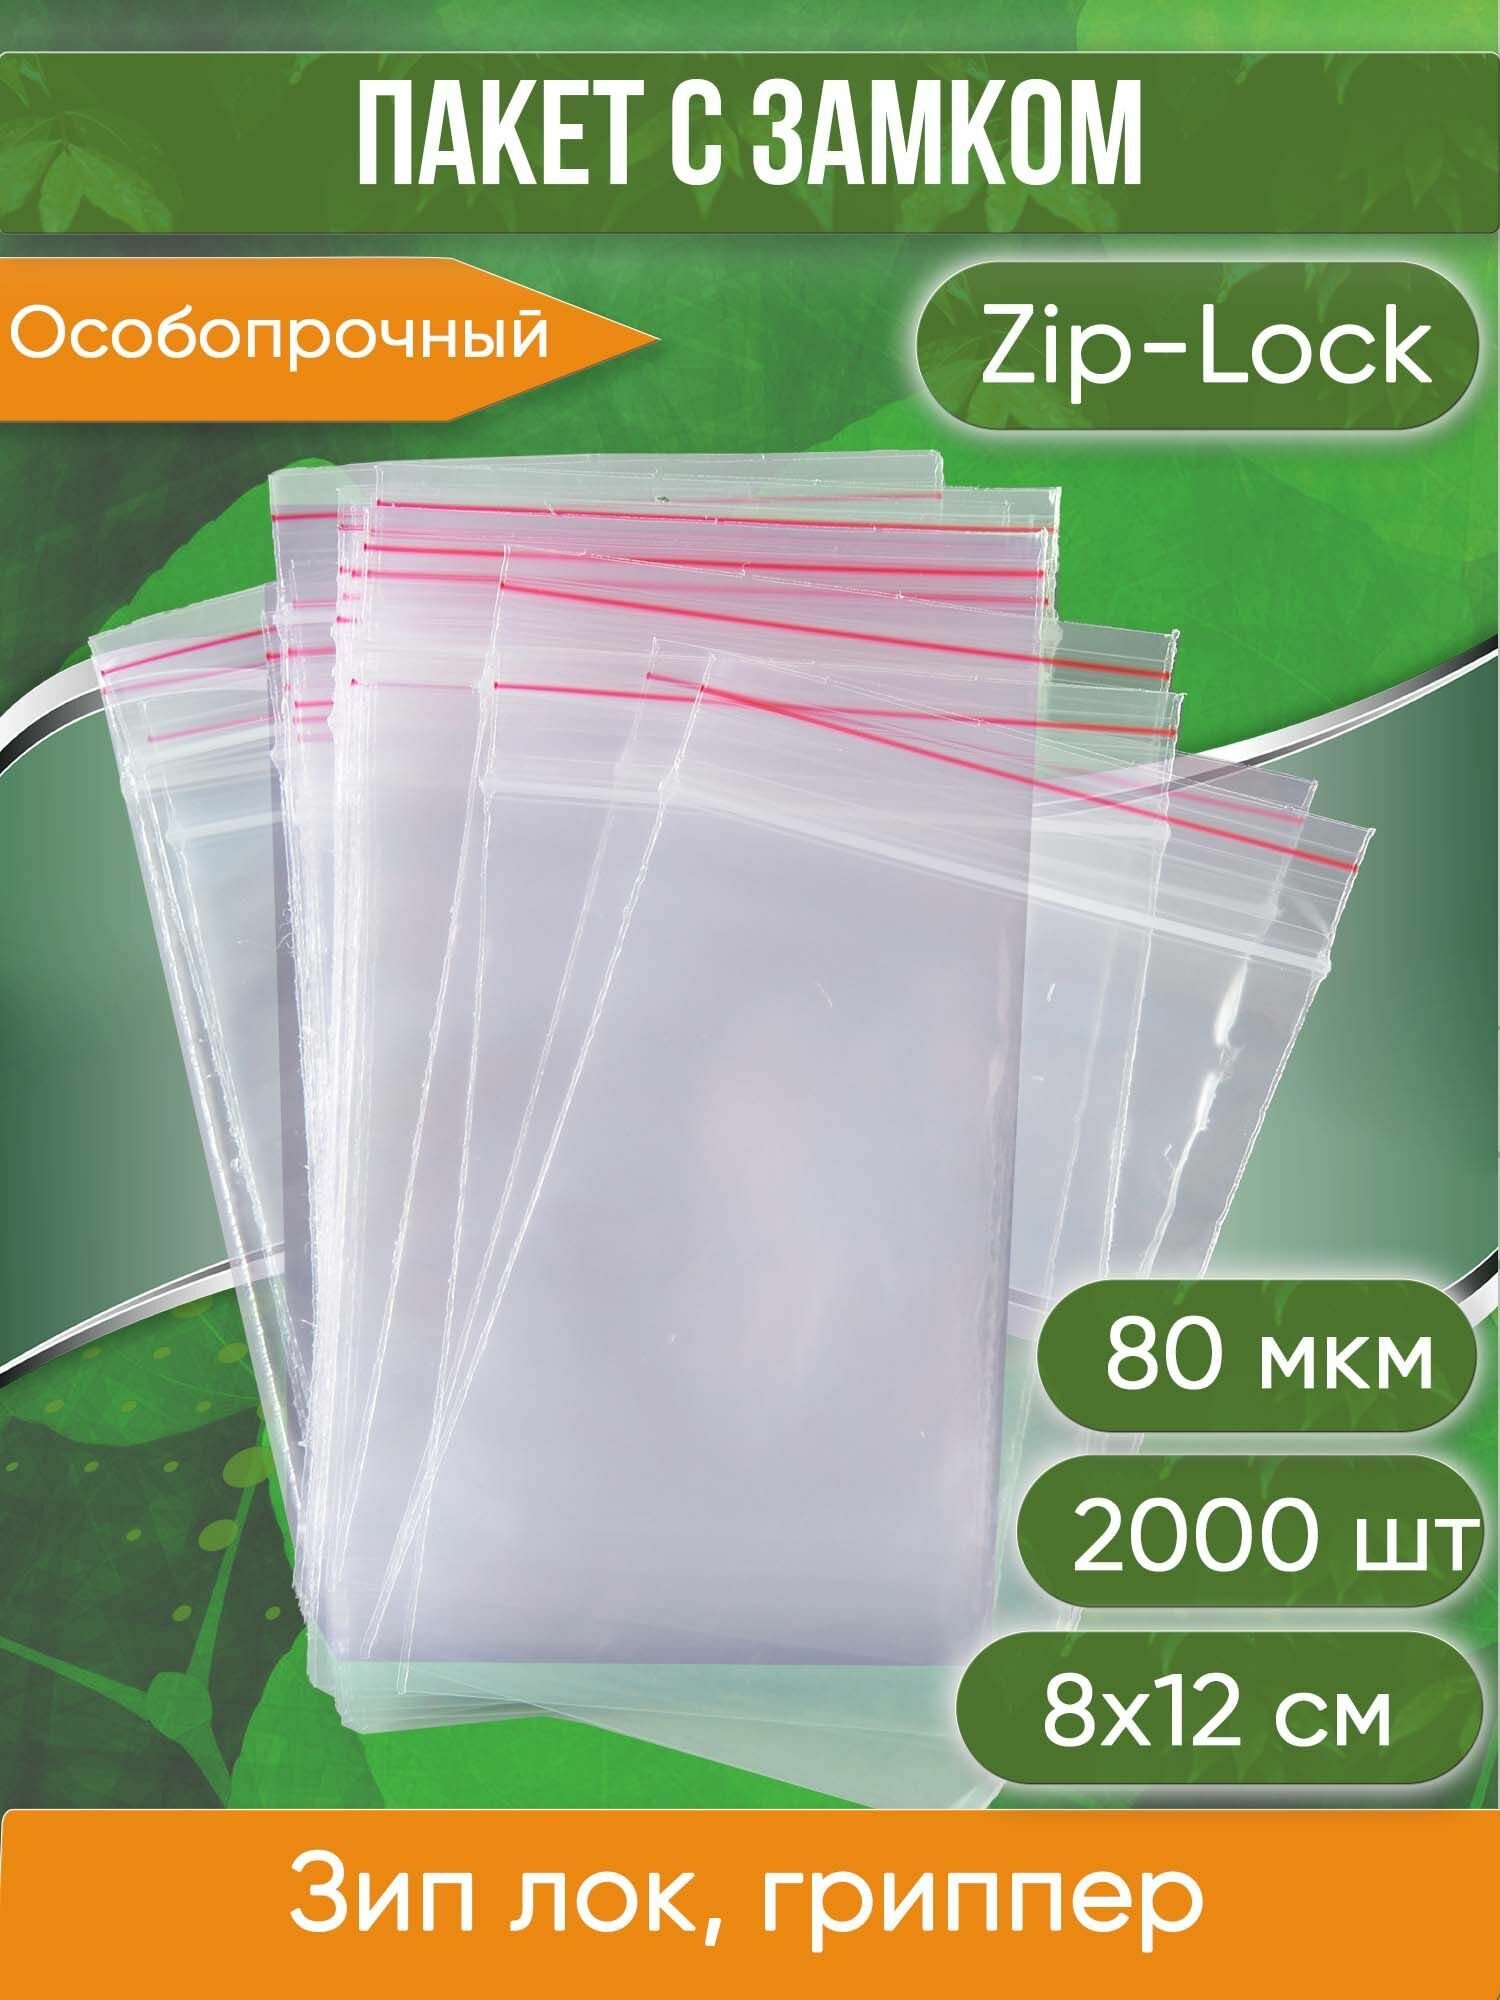 Пакет с замком Zip-Lock (Зип лок), 8х12 см, особопрочный, 80 мкм, 2000 шт. - фотография № 1